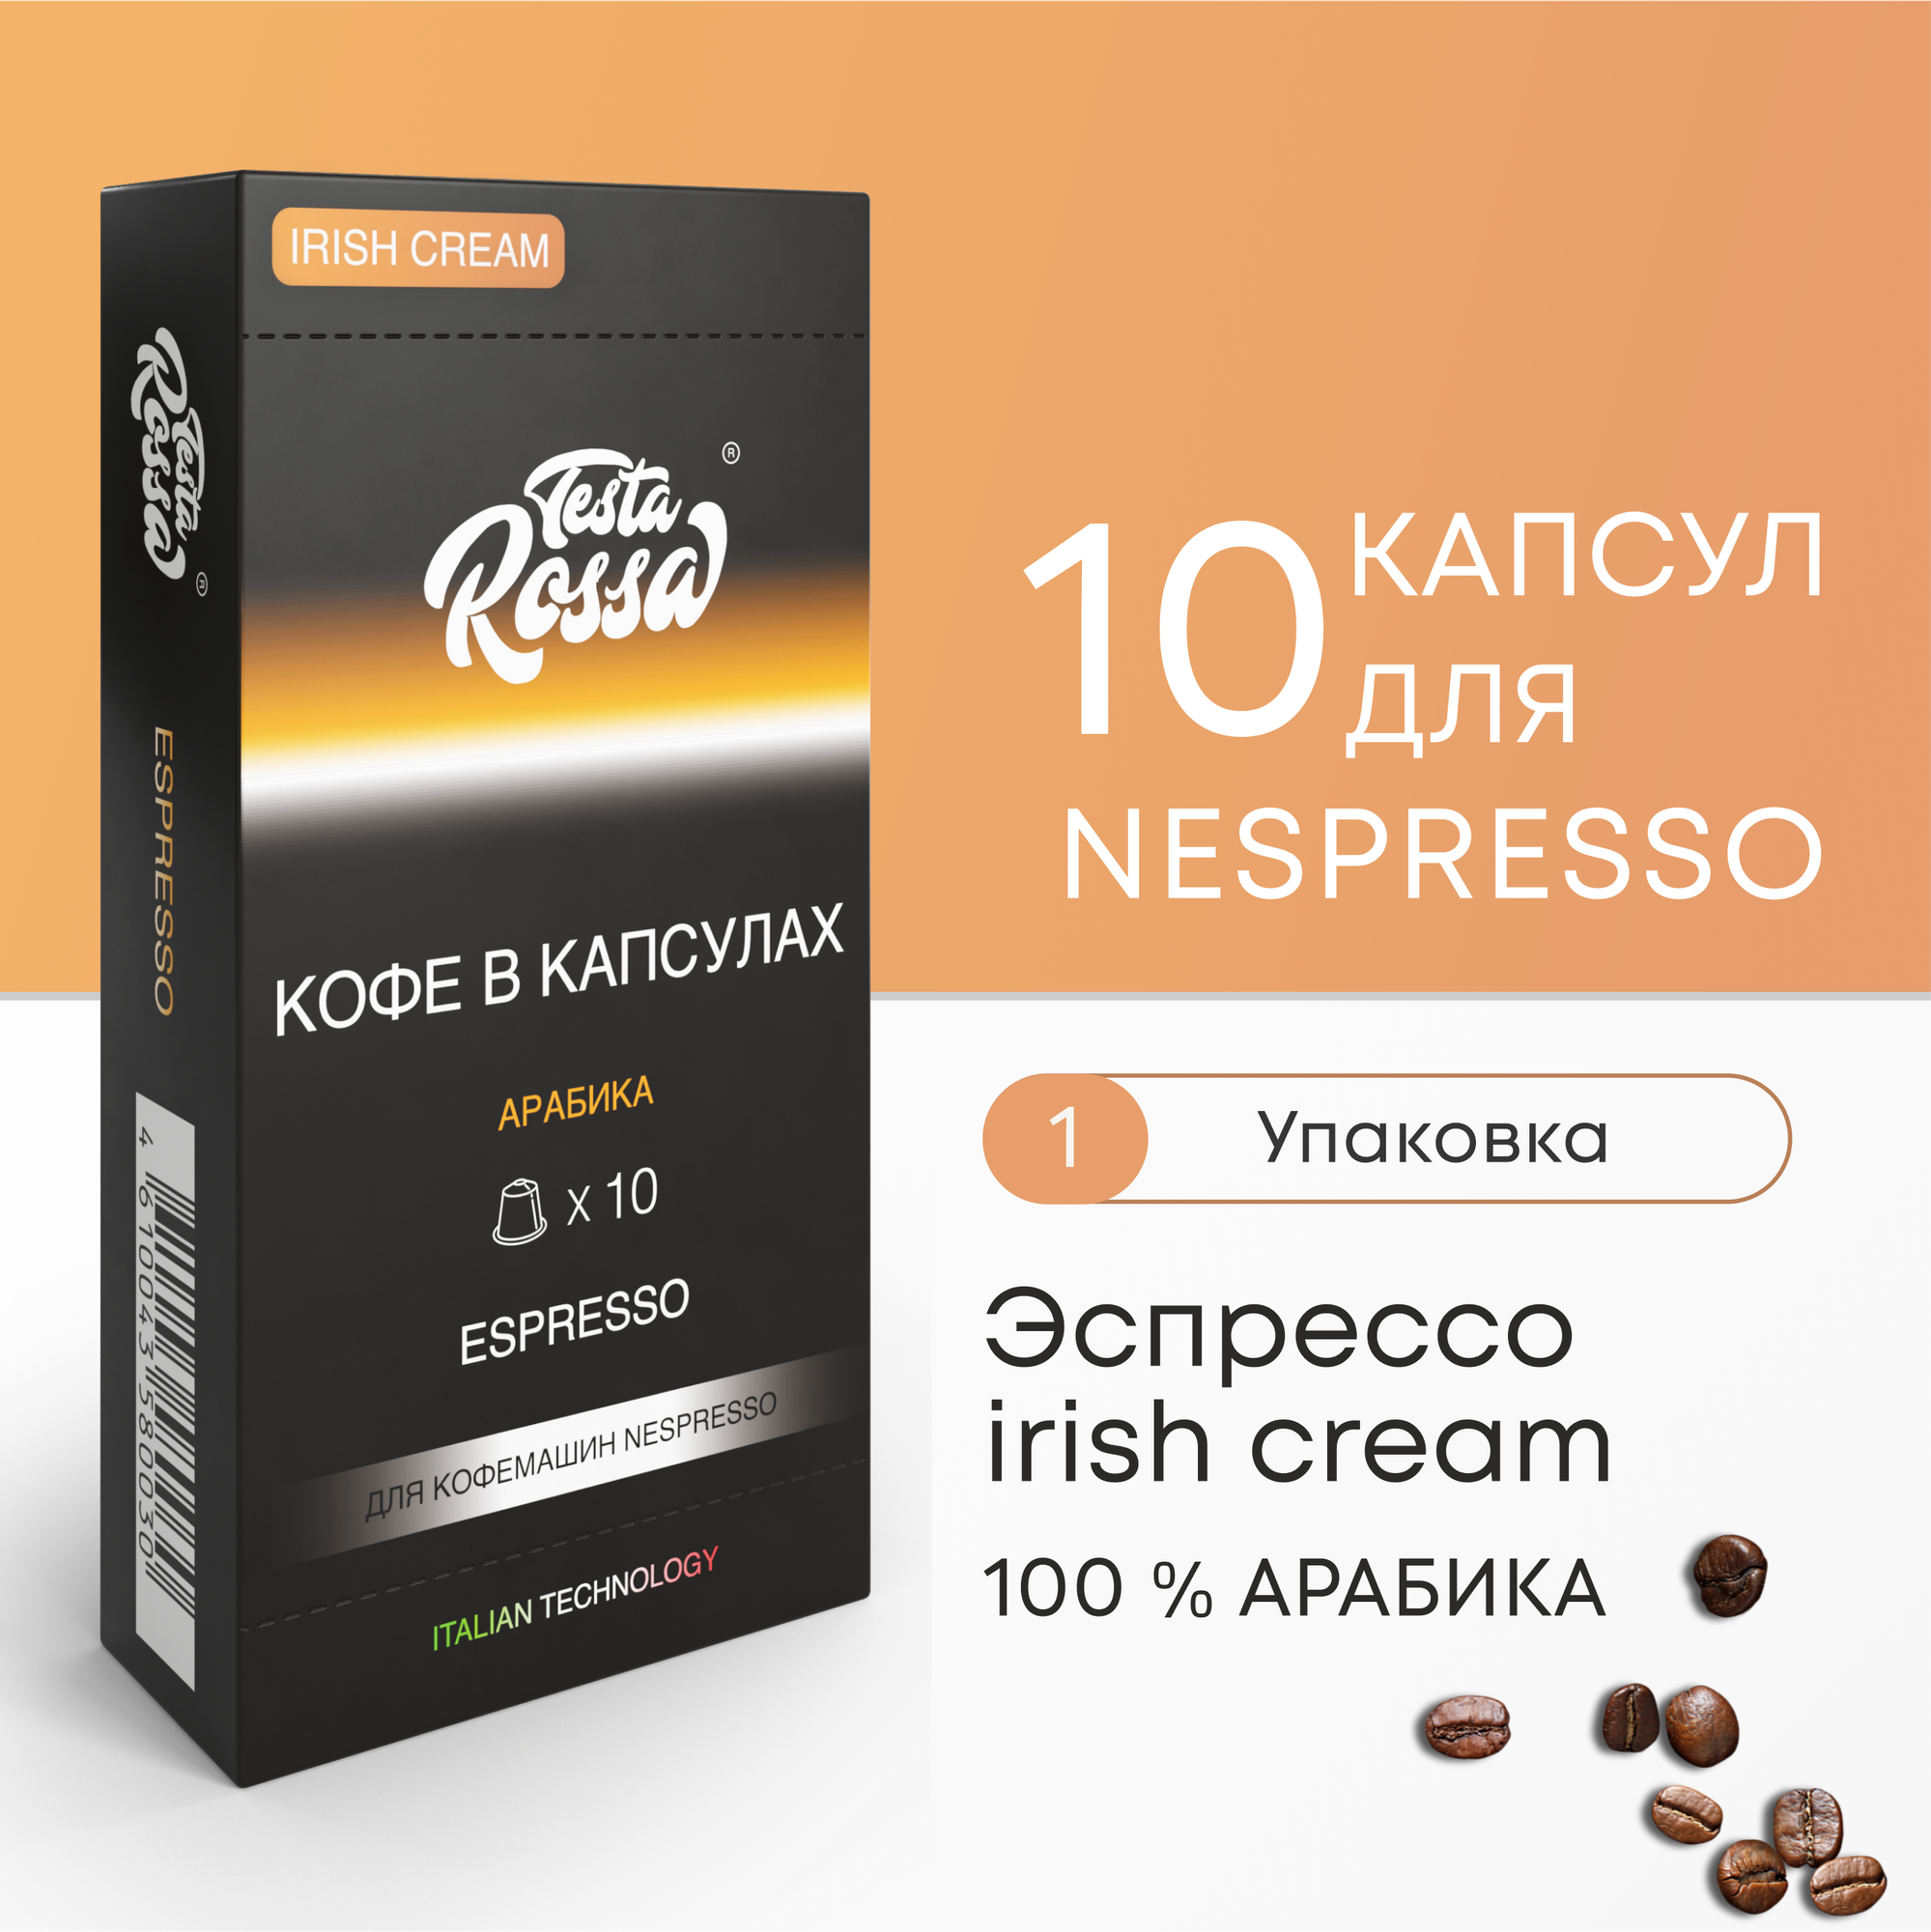 Эспрессо ирландский крем Арабика 100% - Капсулы Testa Rossa - 100 шт IRISH CREAM набор кофе в капсулах неспрессо для кофемашины NESPRESSO